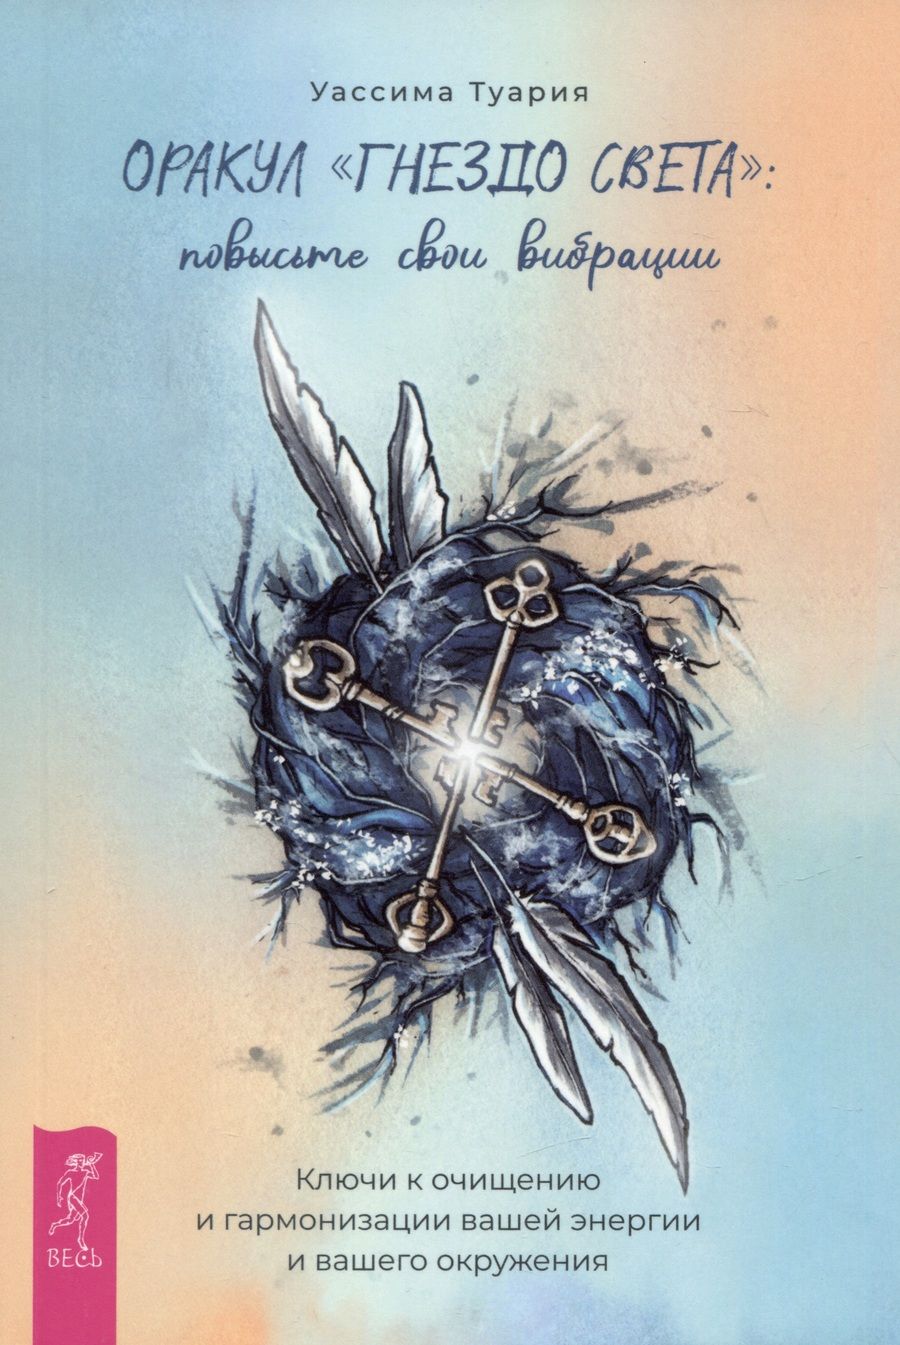 Обложка книги "Туария: Оракул Гнездо света. Повысьте свои вибрации. Брошюра"